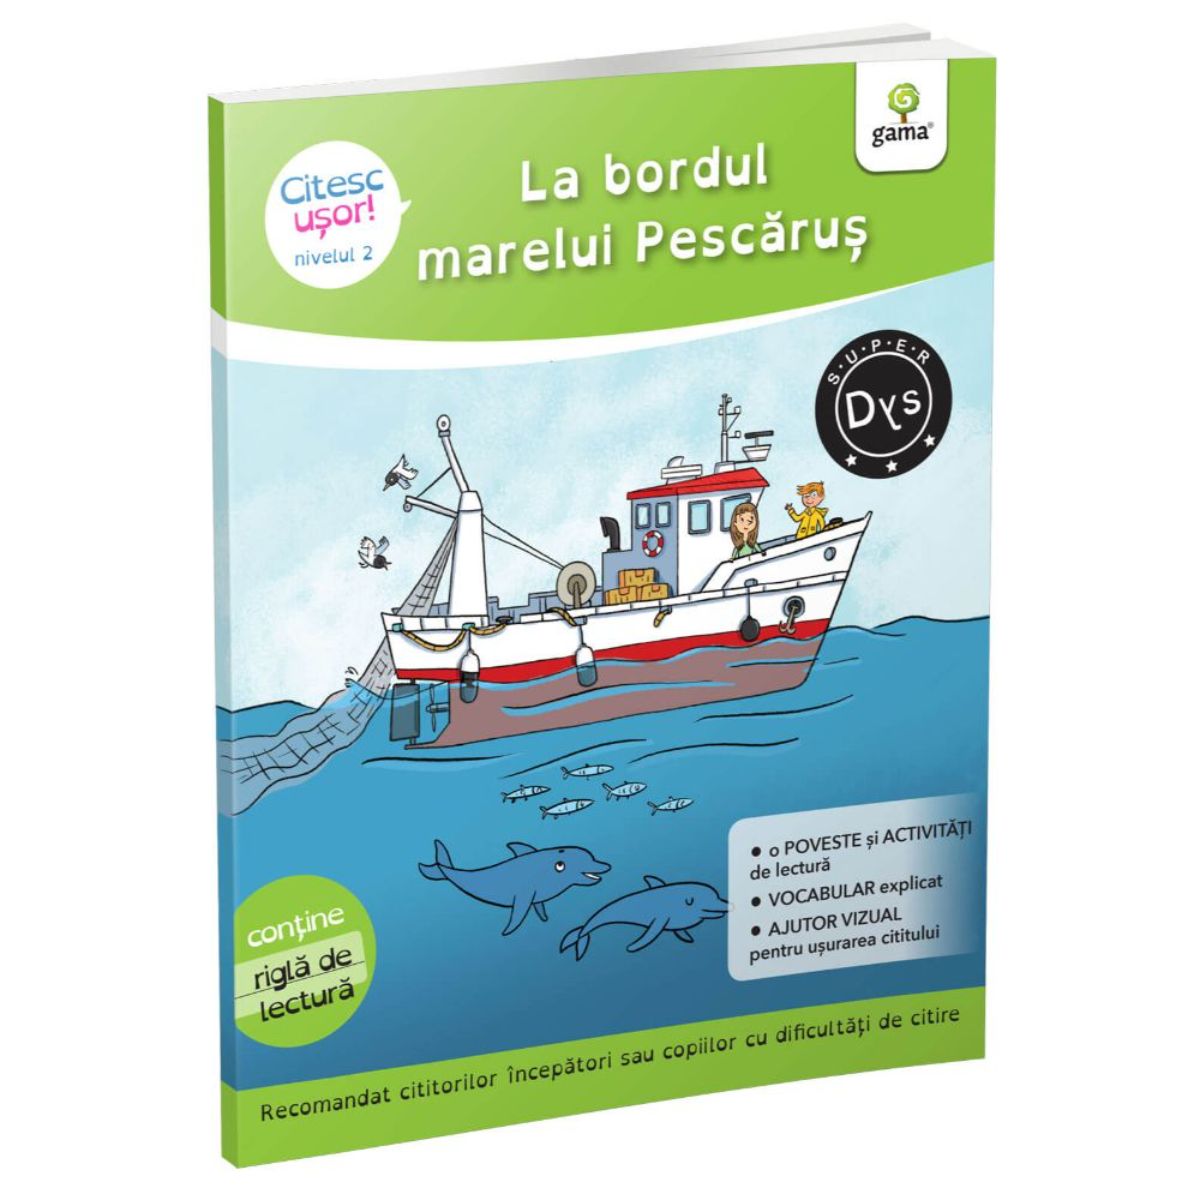 Poze La bordul marelui Pescarus, Citesc usor, Evelyne Barge, Marco Overzee